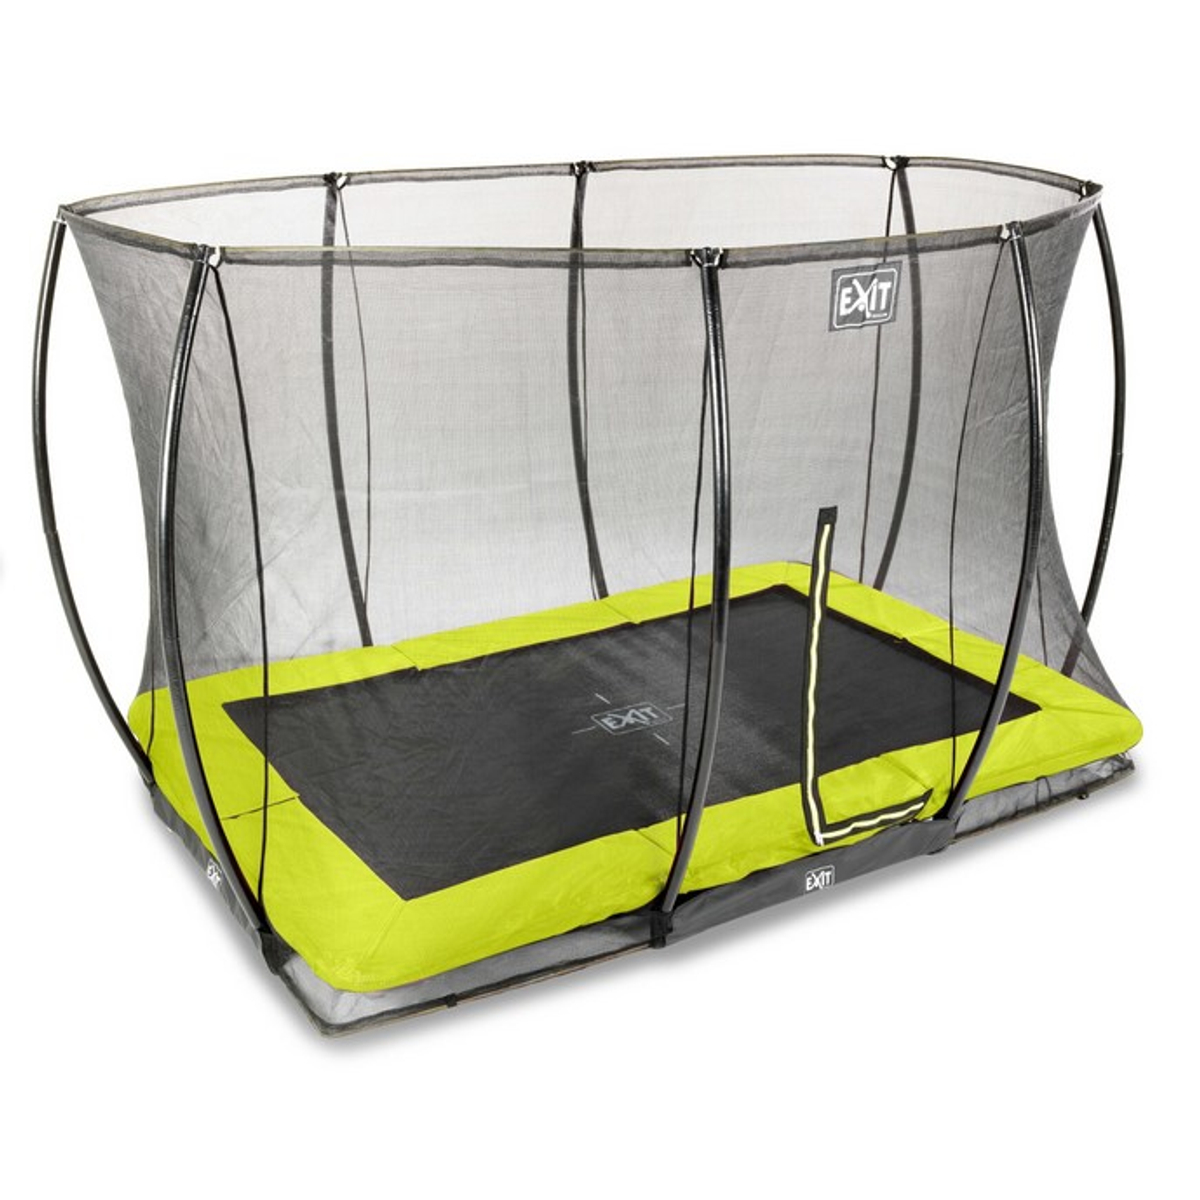 EXIT Silhouette inground trampoline 214x305cm met veiligheidsnet - groen